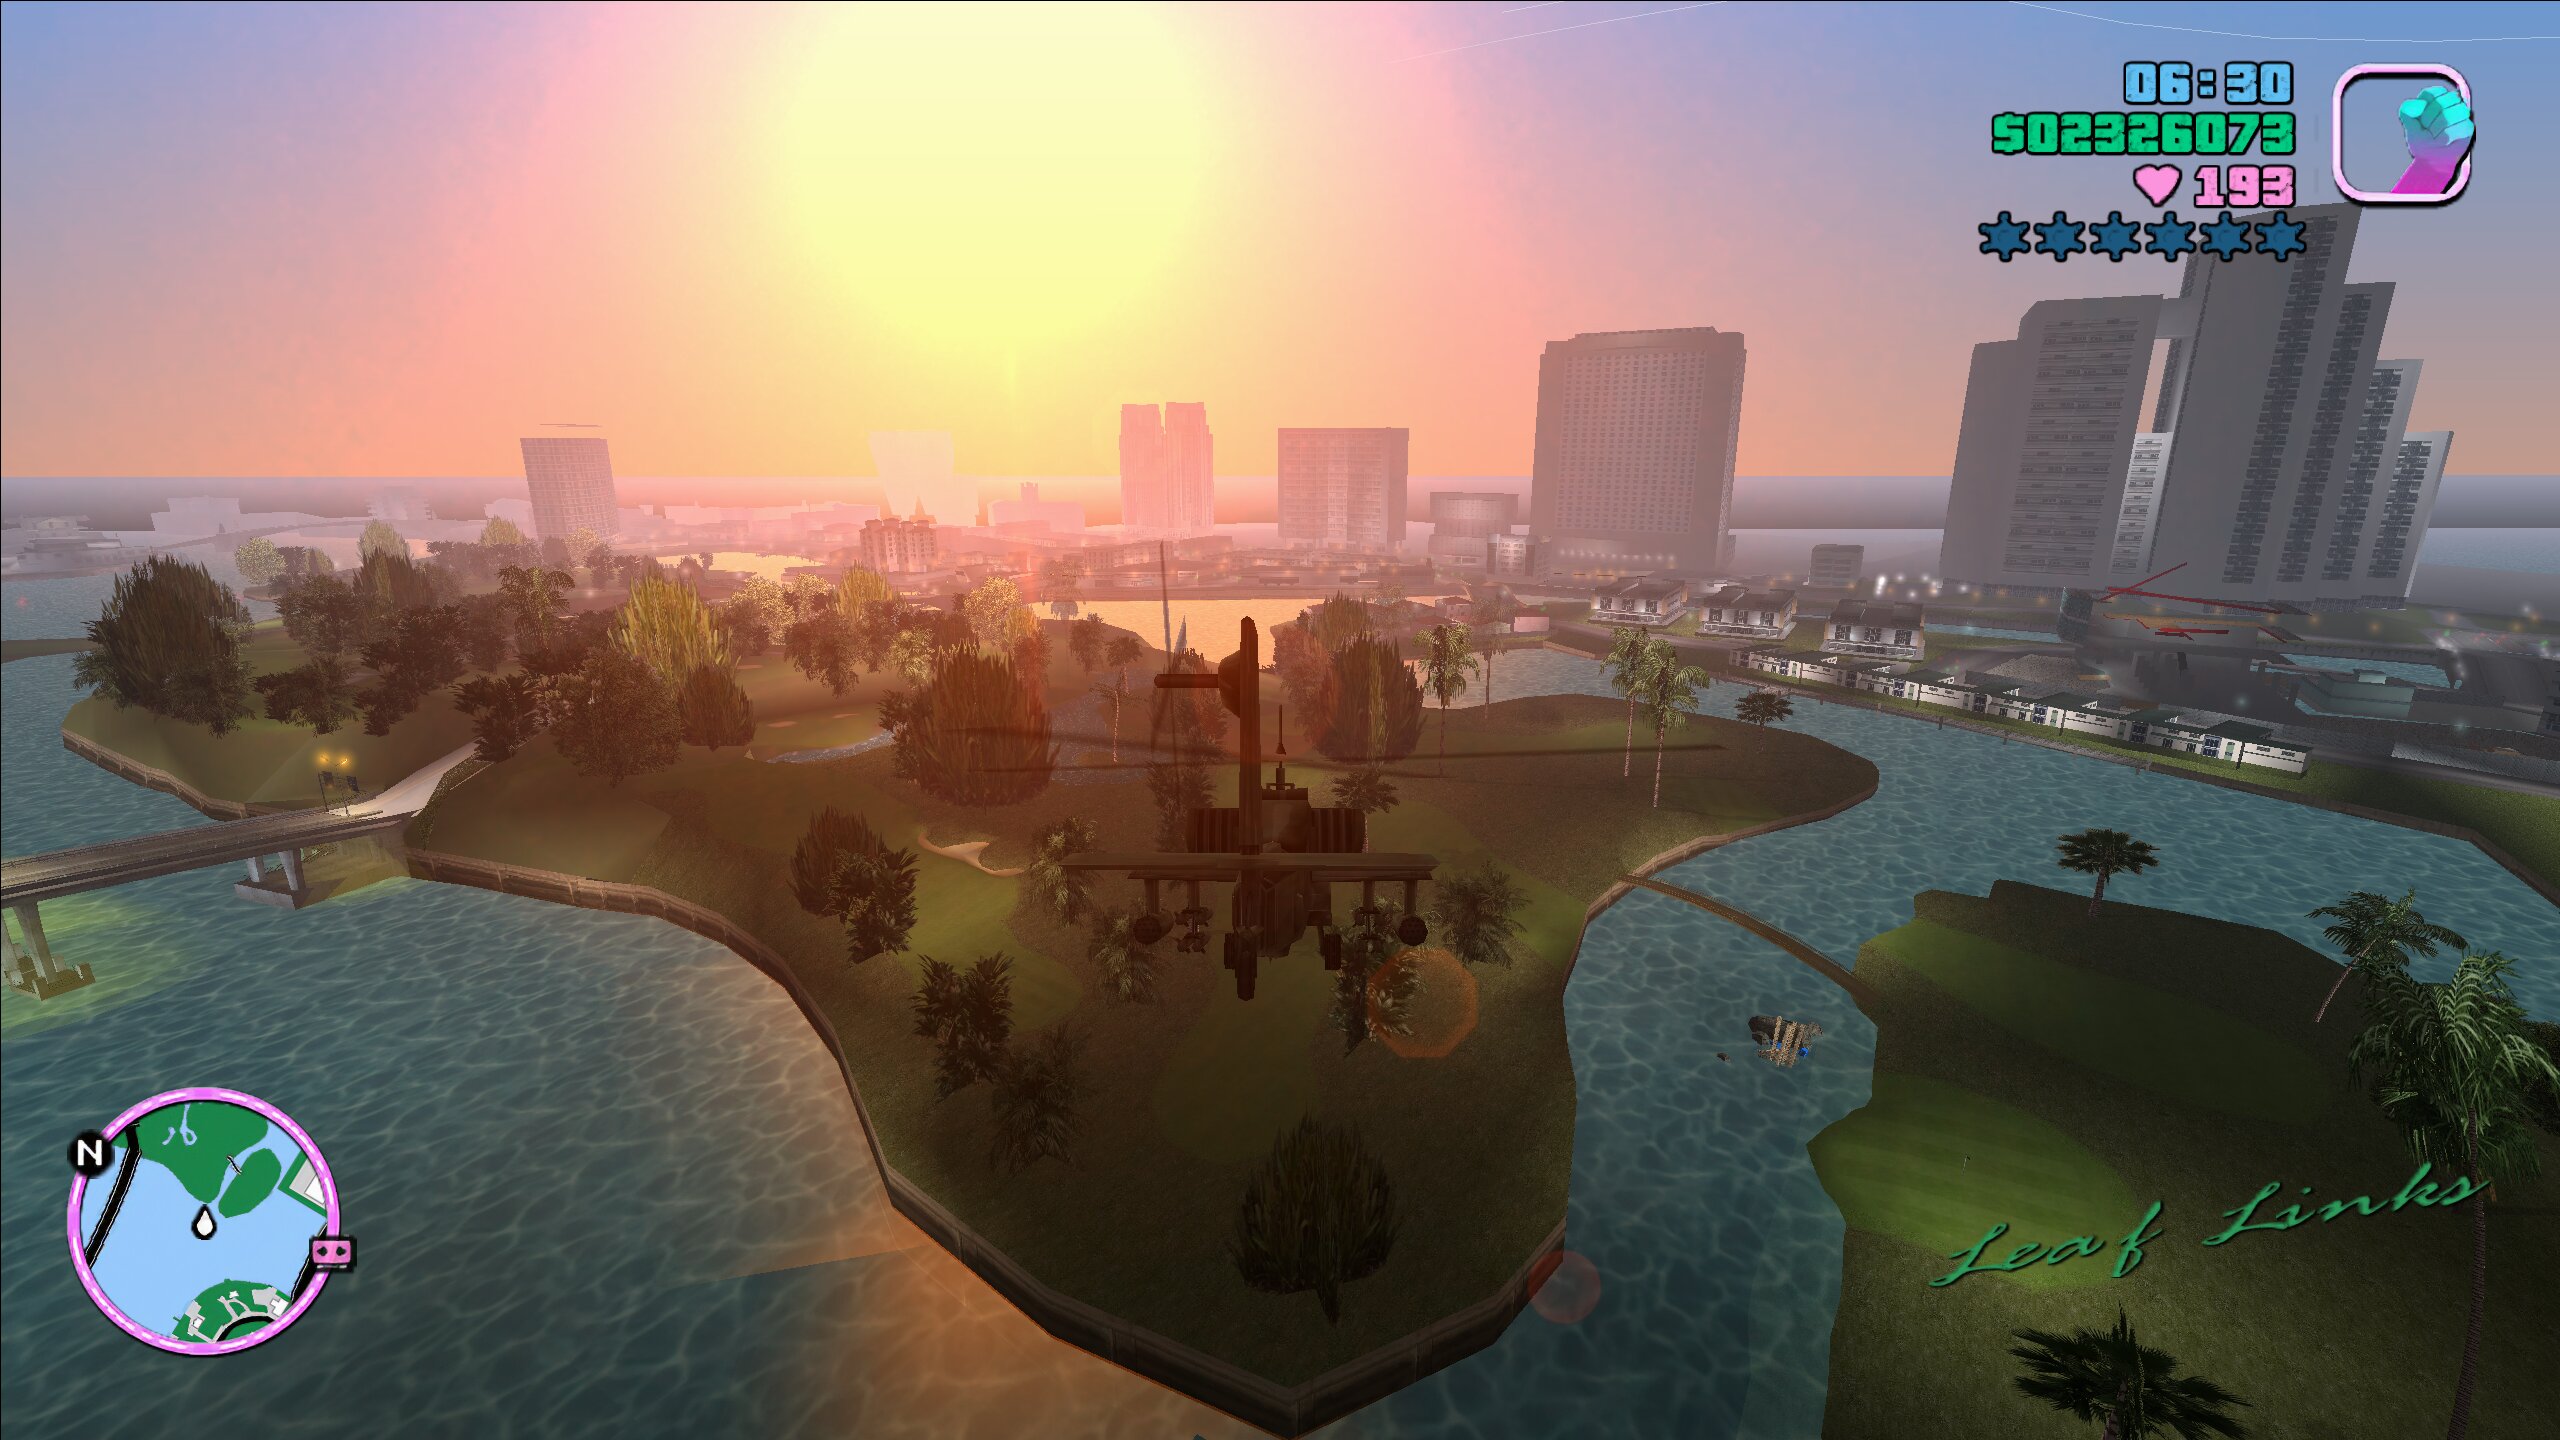 Image 3 : Des textures améliorées par IA pour le légendaire Grand Theft Auto : Vice City !